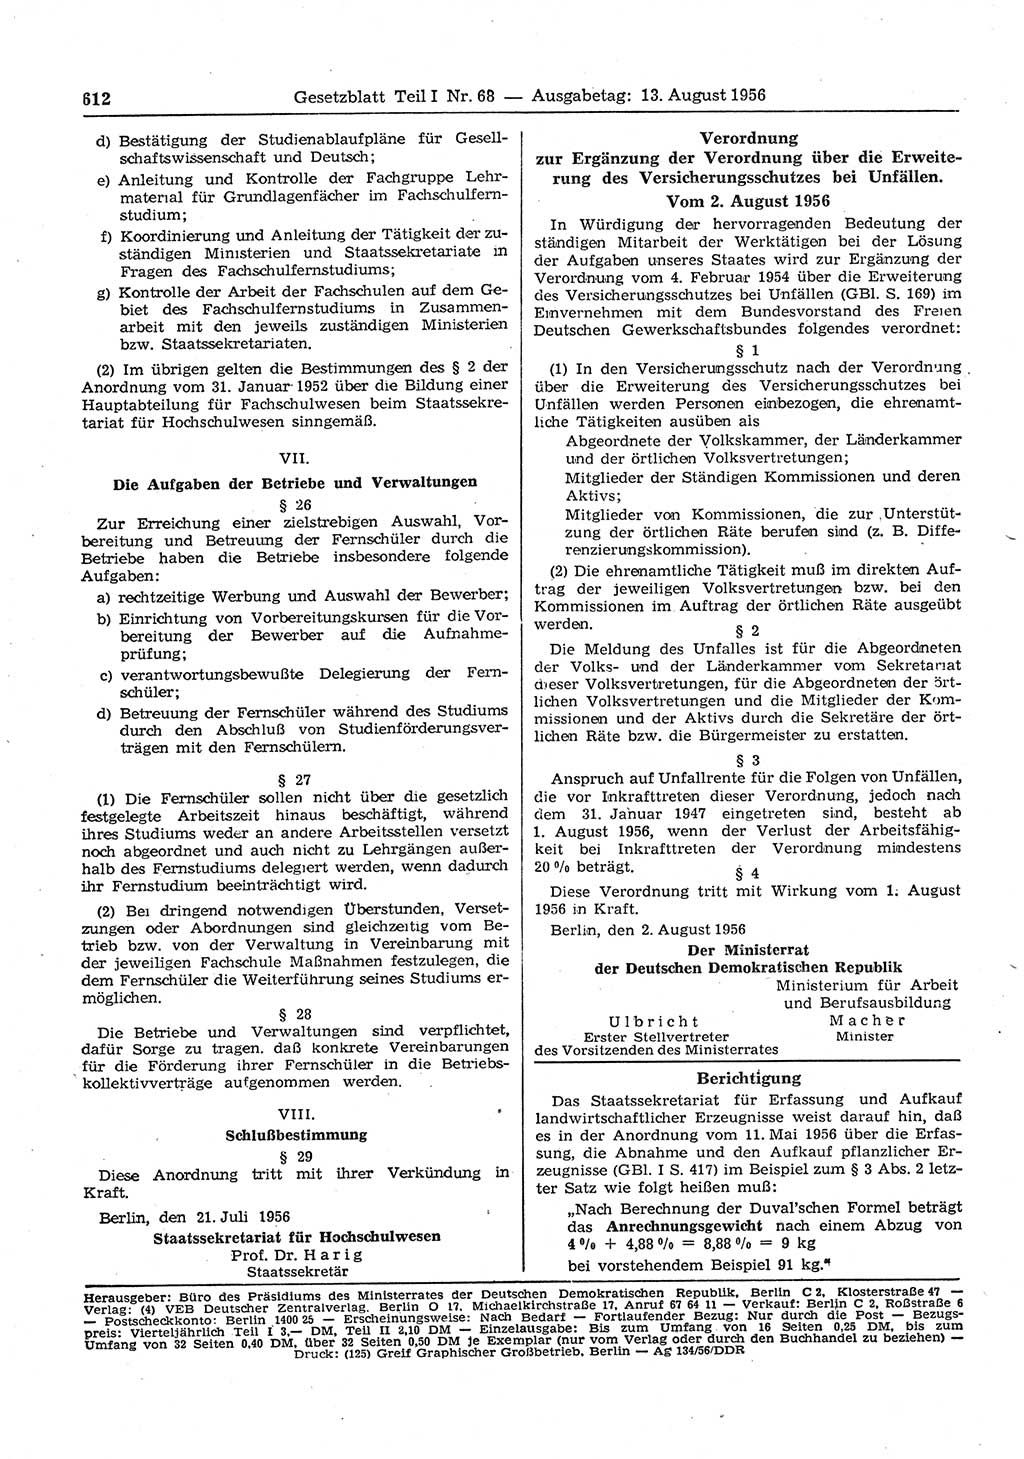 Gesetzblatt (GBl.) der Deutschen Demokratischen Republik (DDR) Teil Ⅰ 1956, Seite 612 (GBl. DDR Ⅰ 1956, S. 612)